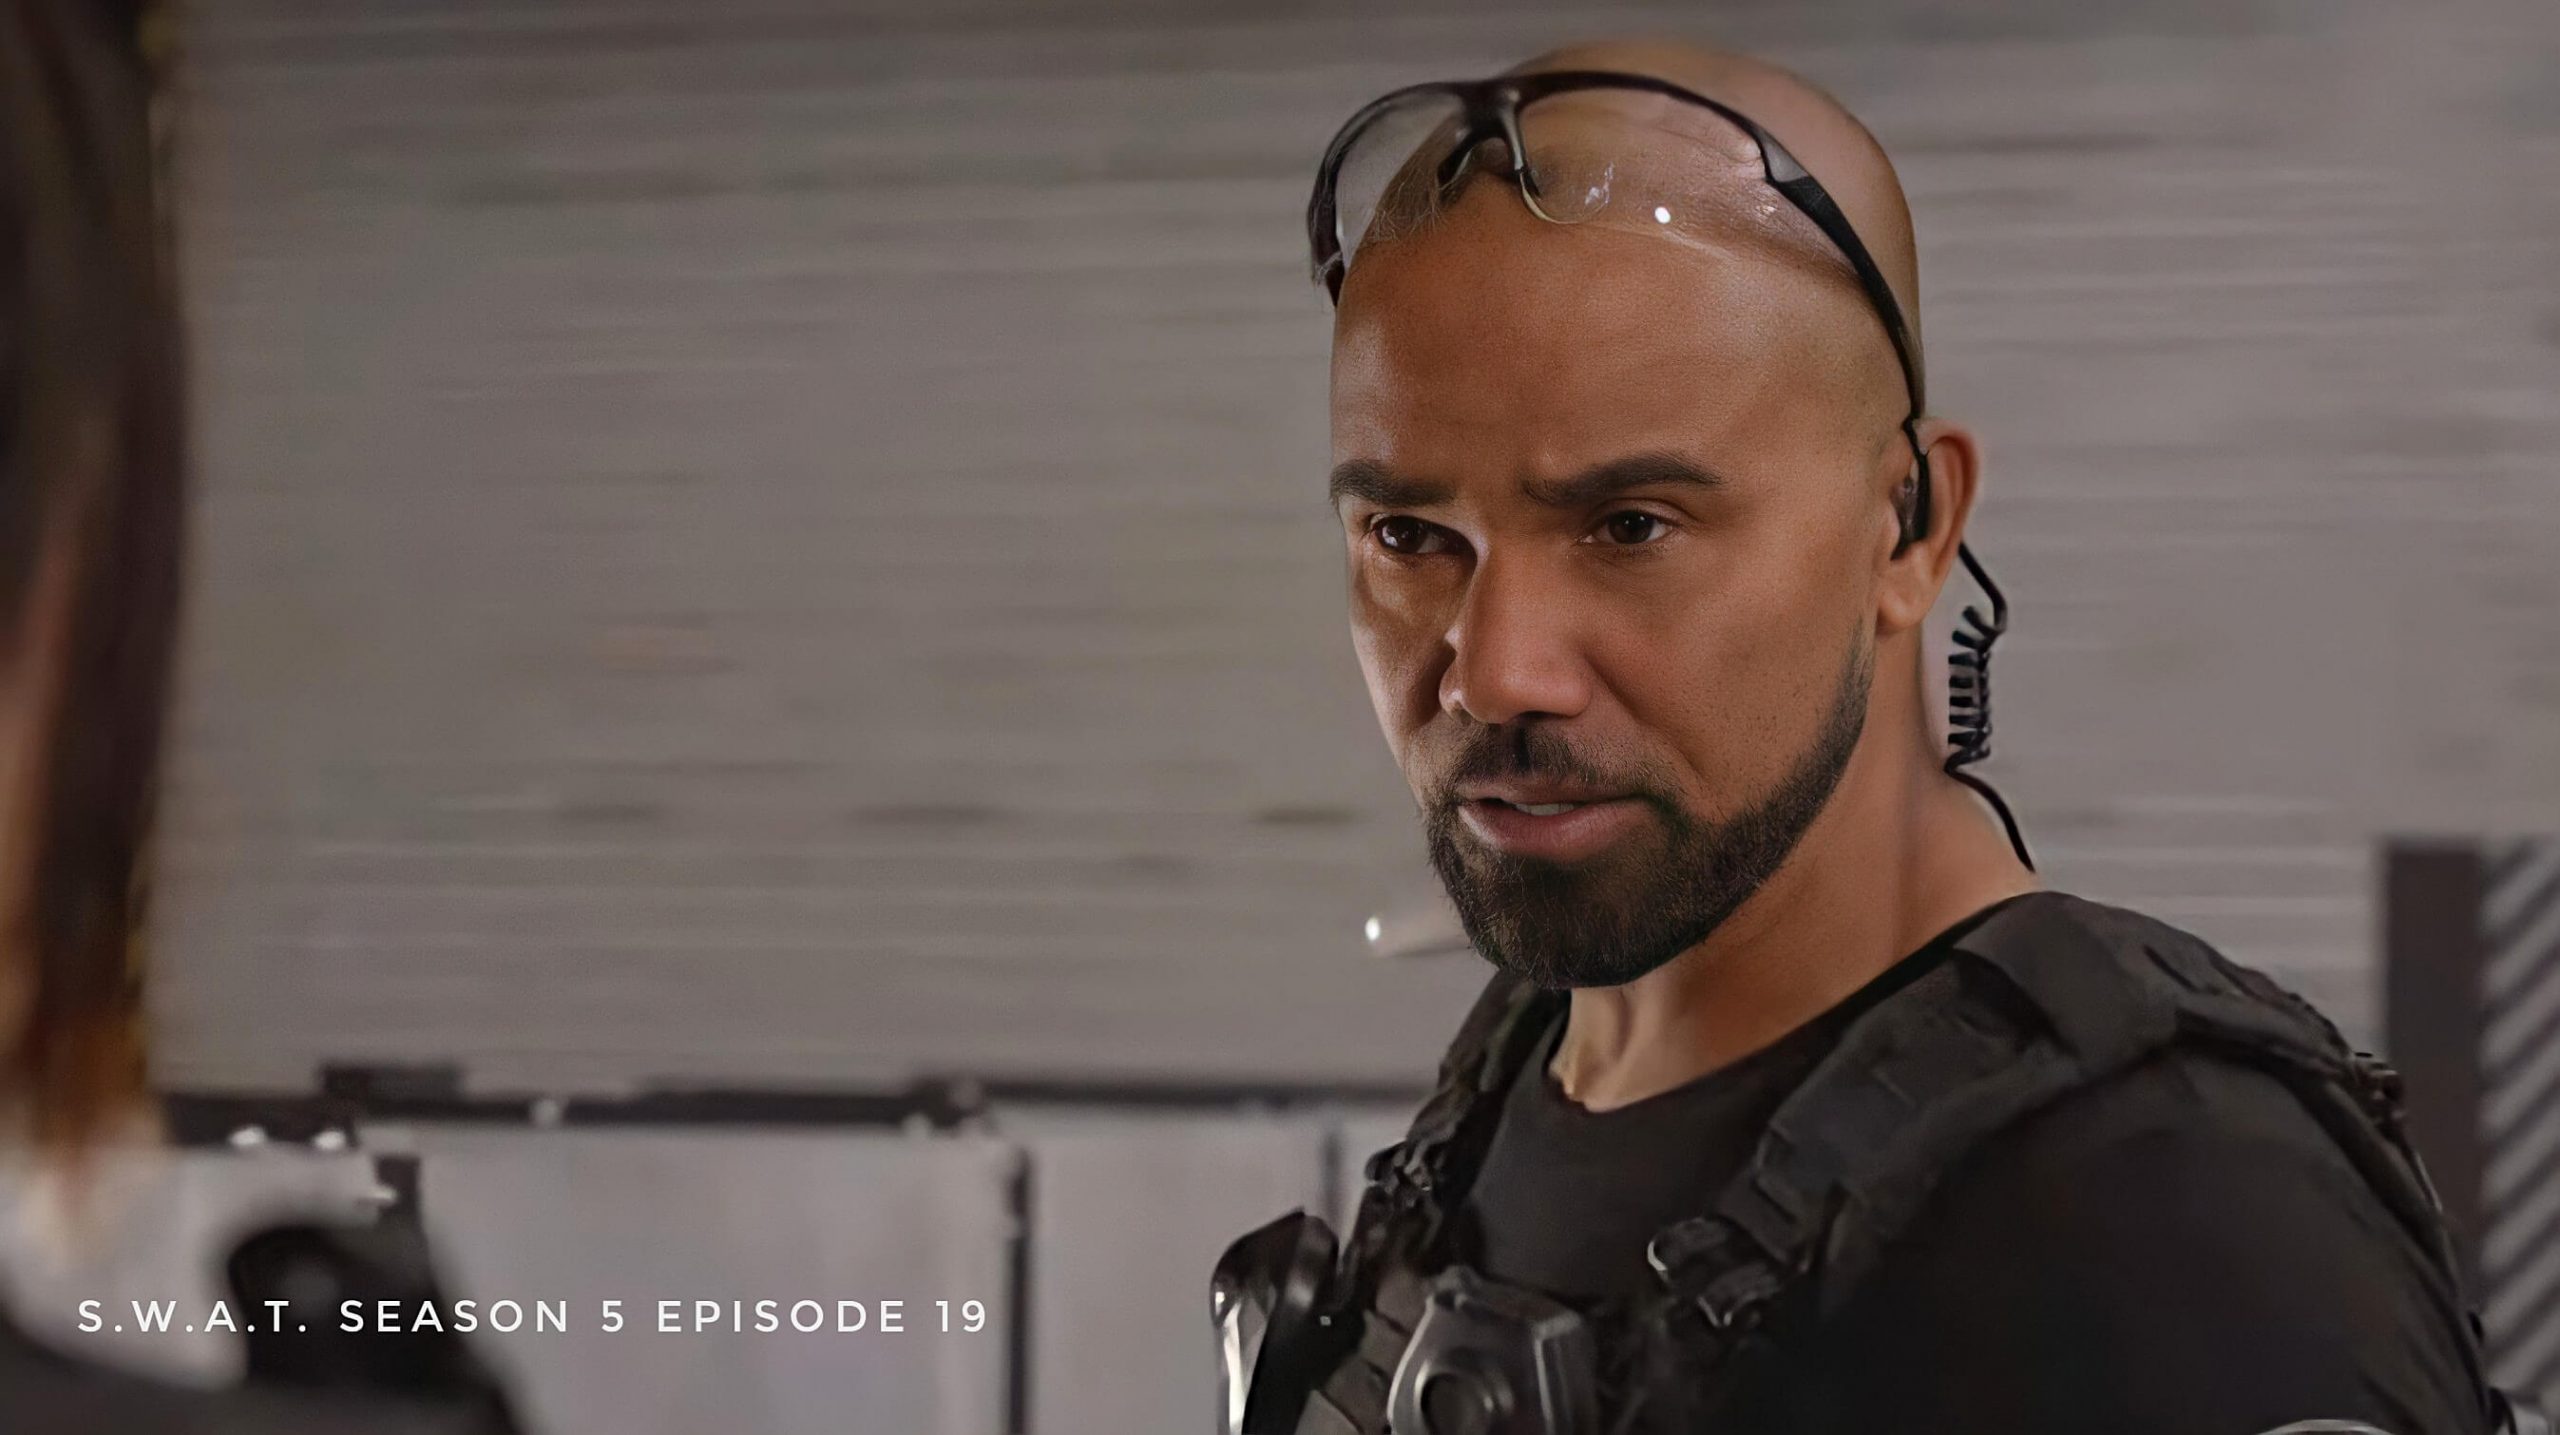 SWAT season 5 episode 19 release date